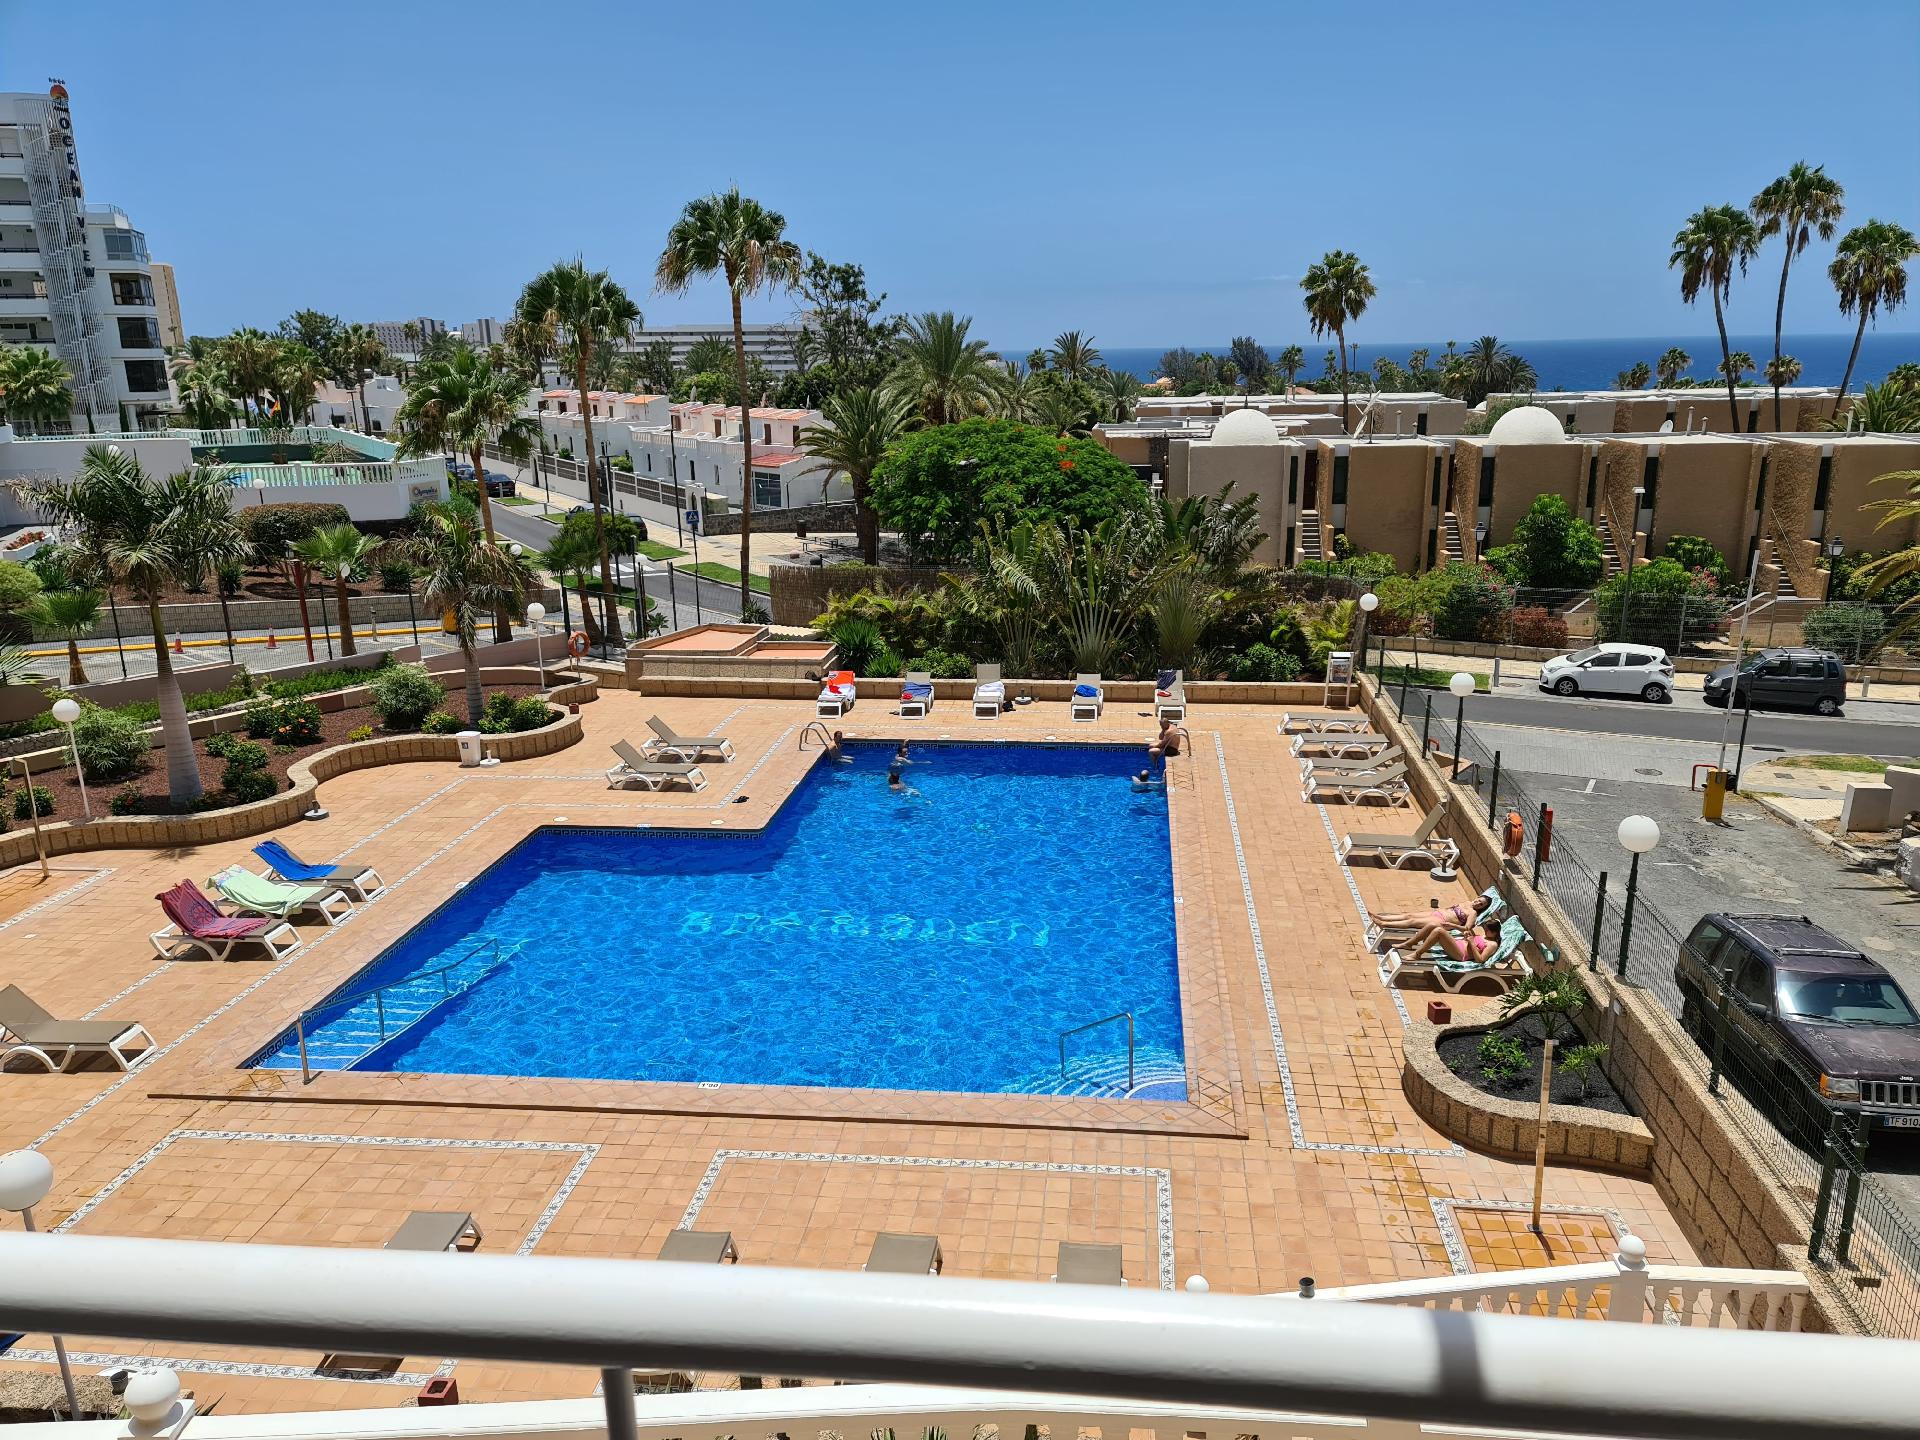 Appartement in Costa Adeje mit Beheiztem gemeinsam Ferienwohnung in Spanien